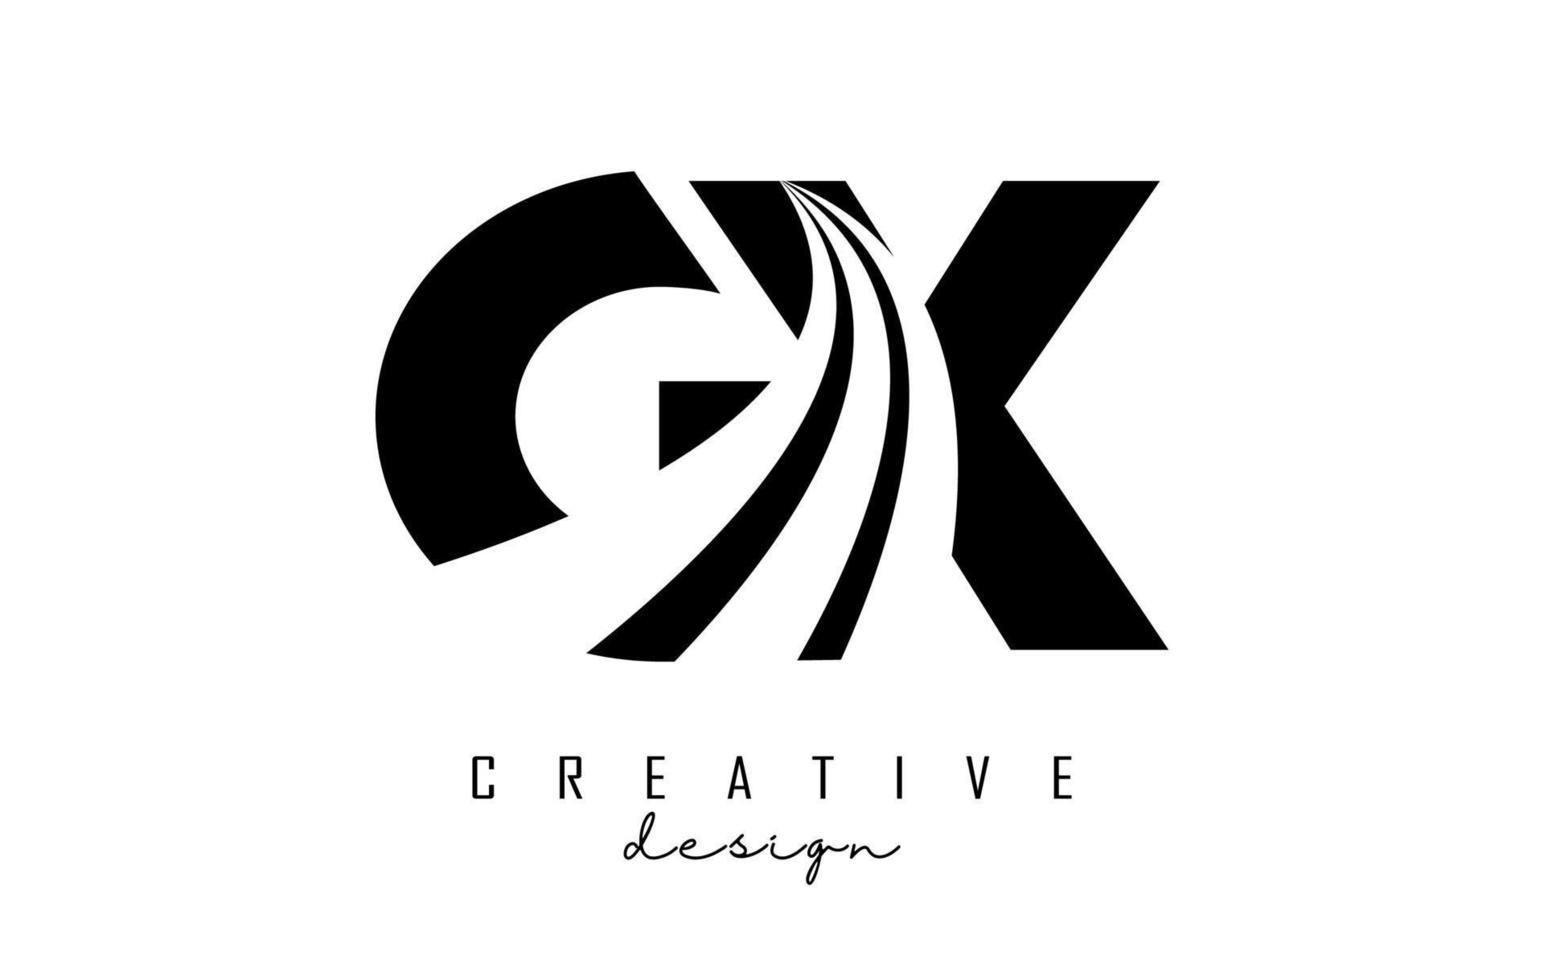 lettere nere creative logo gx gx con linee guida e concept design stradale. lettere con disegno geometrico. vettore